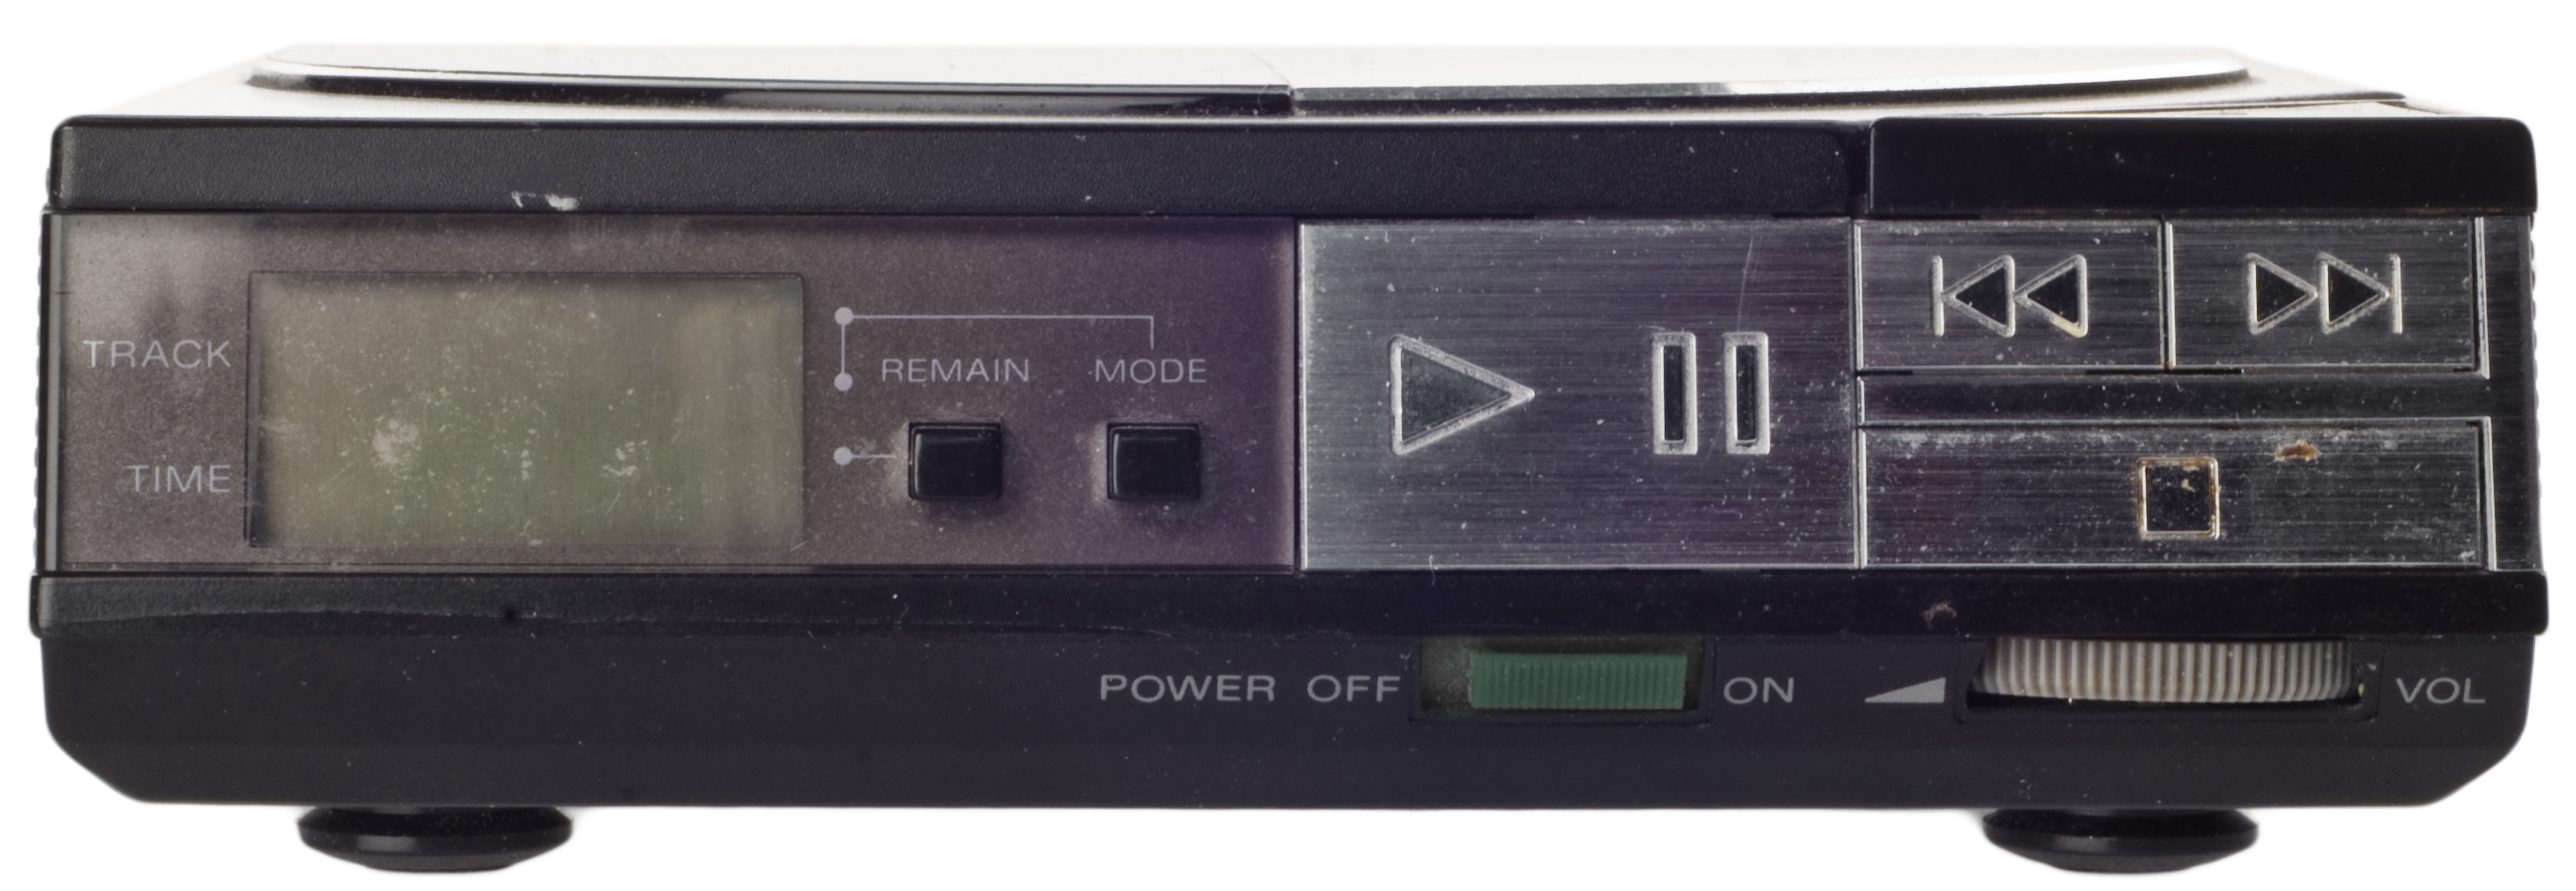 технологии второй половины 20 века: Sony Discman D-50